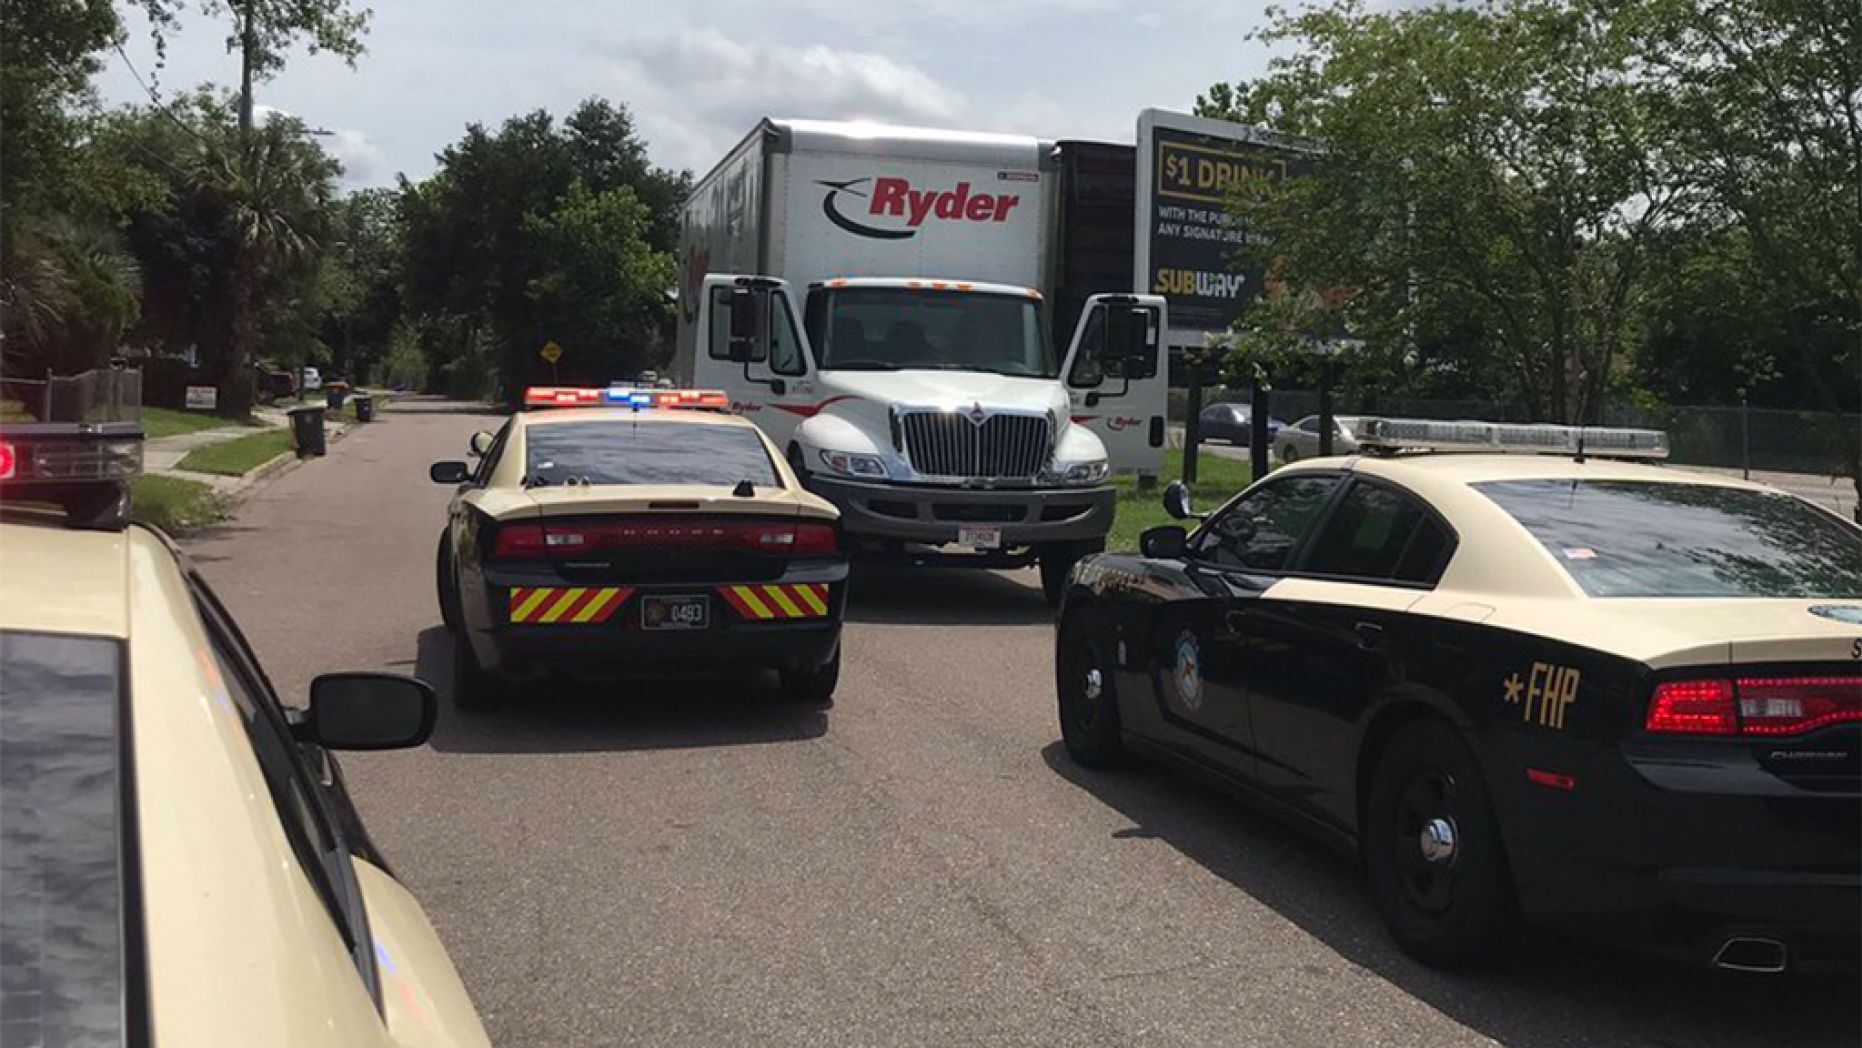 Policía arrestó a hombre que conducía un camión con ataúdes robados en Florida